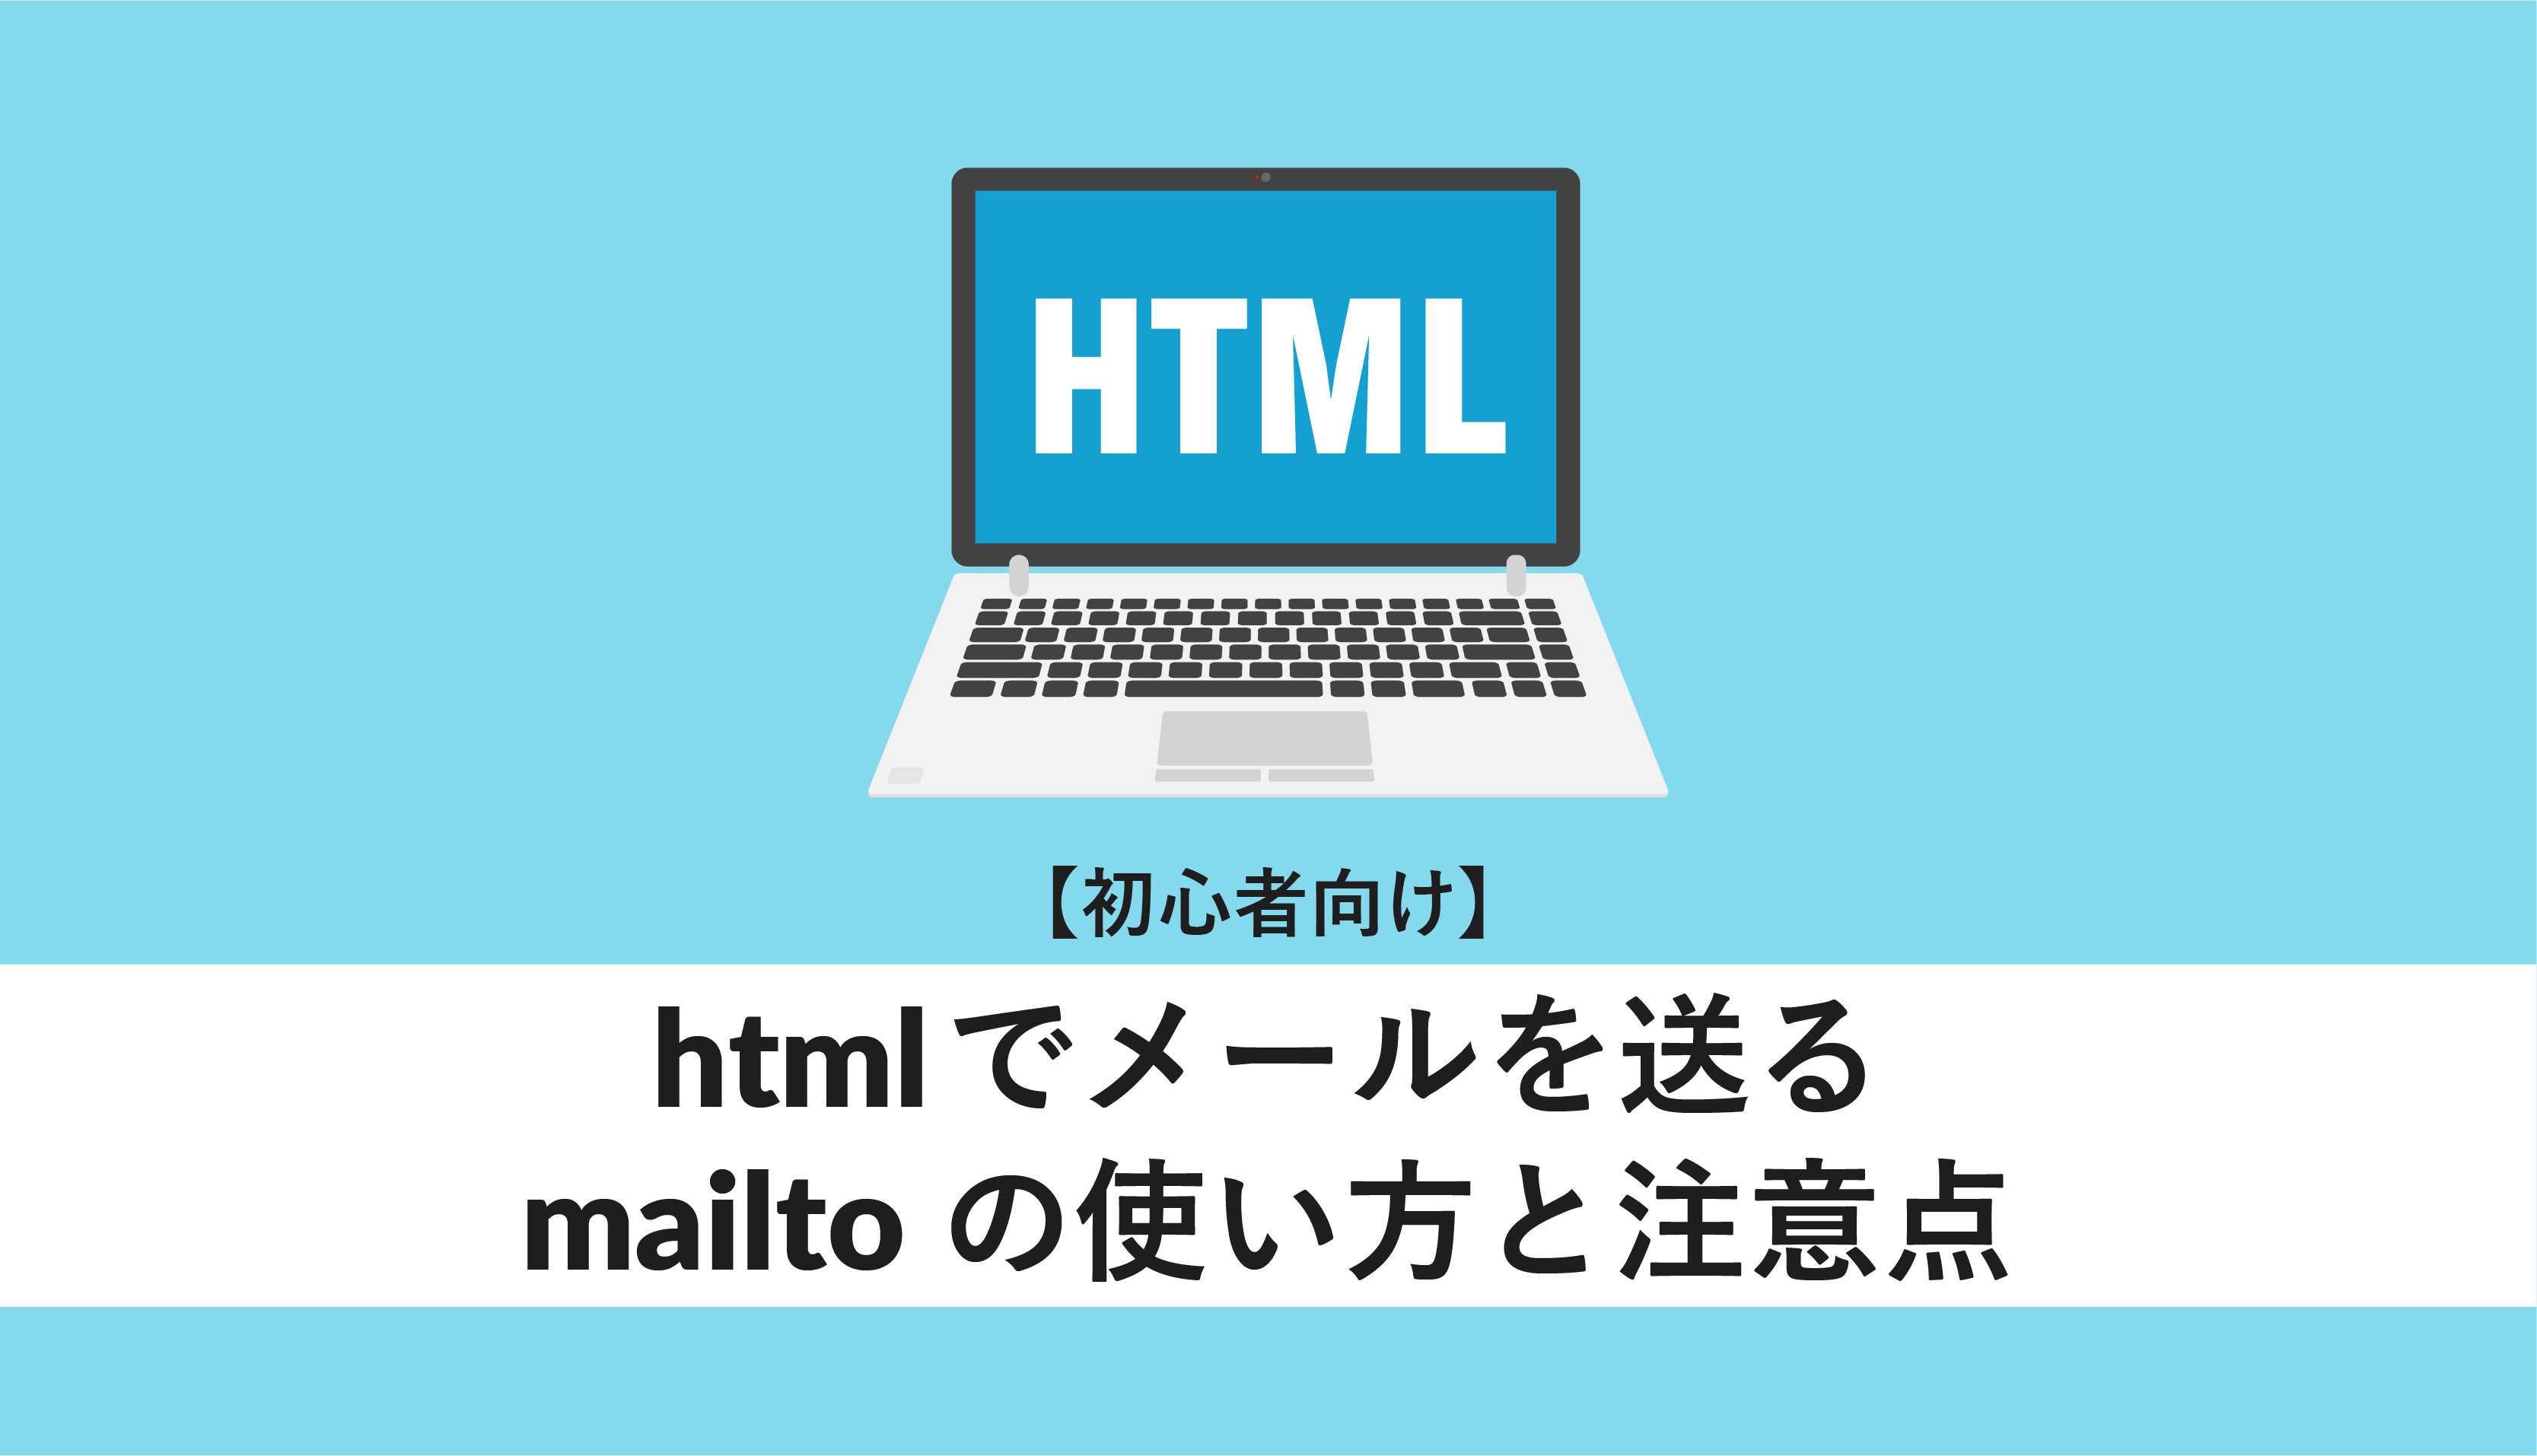 htmlでメールを送るmailtoの使い方と注意点